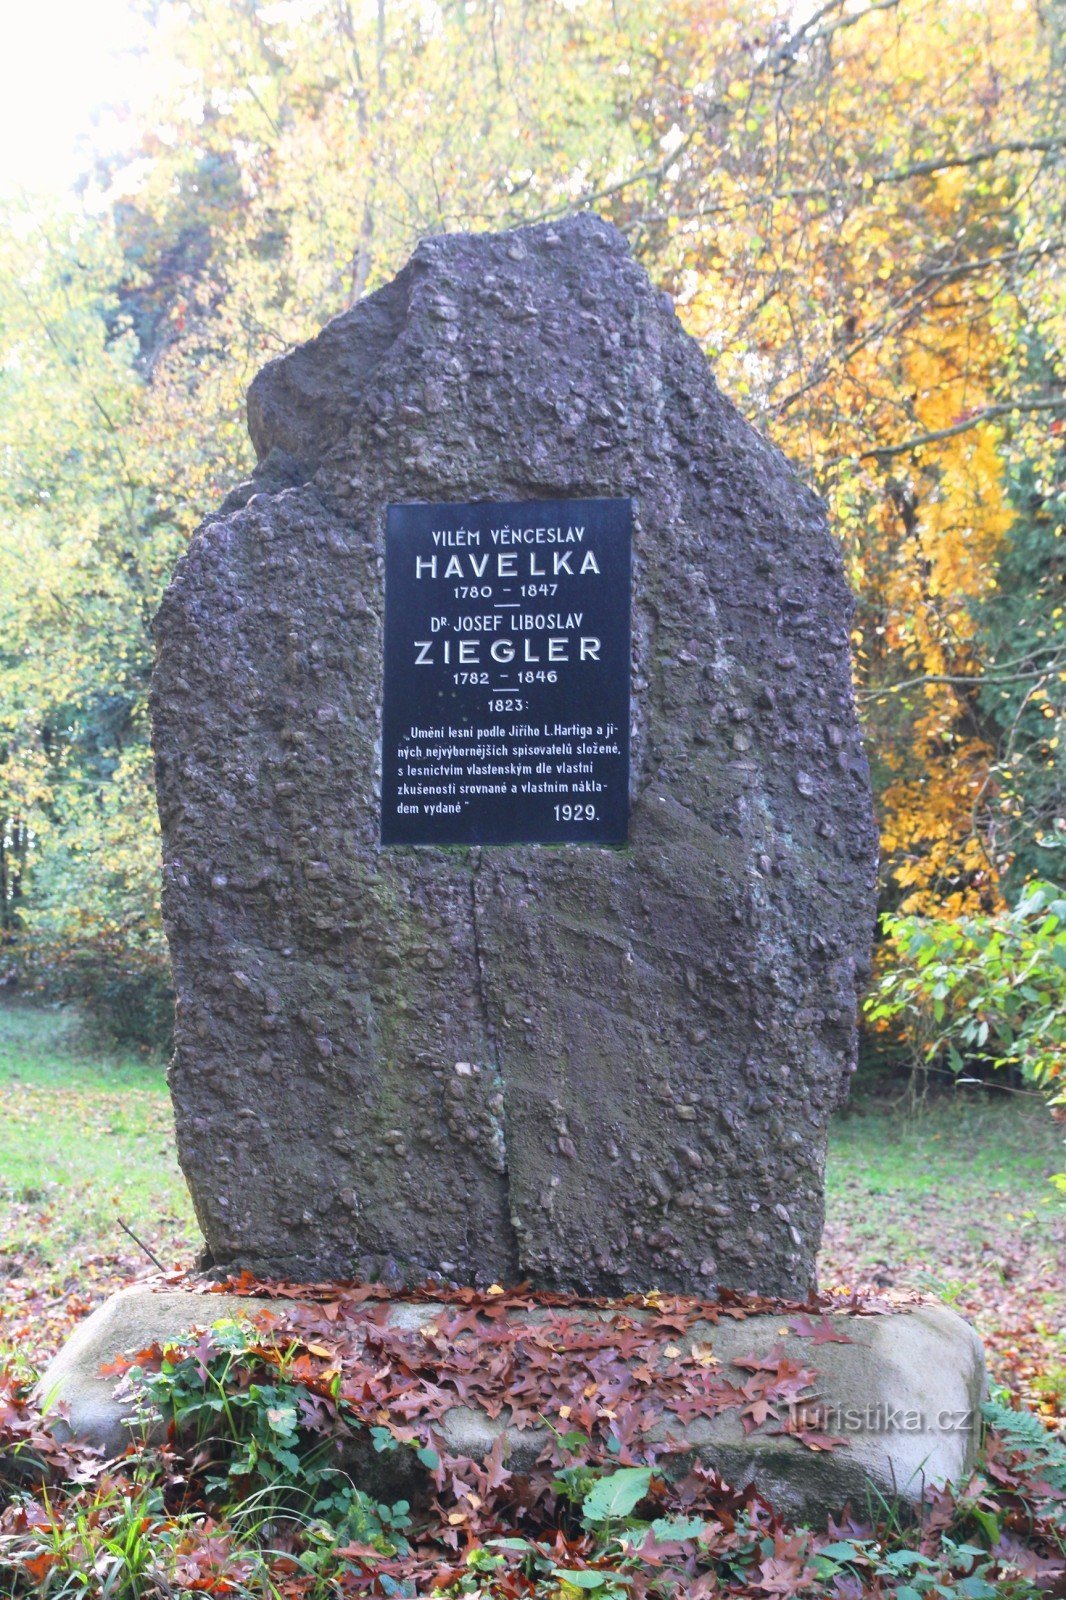 Đài tưởng niệm VV Havelka và JL Ziegler